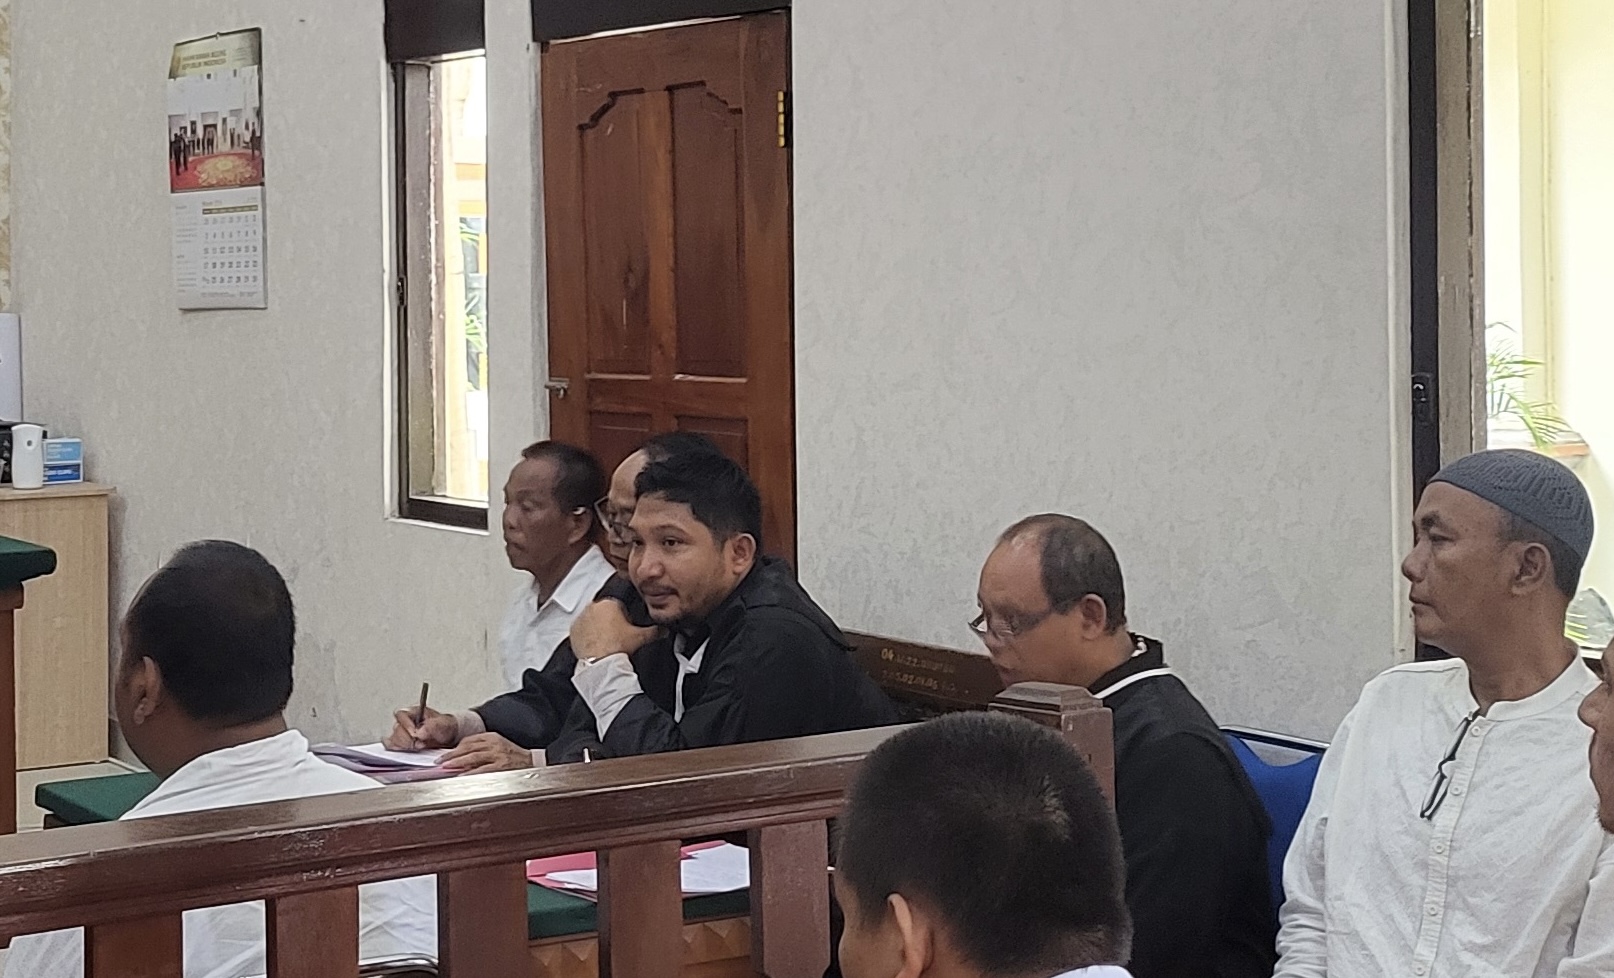 Jaksa Hadirkan Saksi Fakta, Tiga Terdakwa Kasus Duaan Penipuan Jual Beli Tanah Unud Makin Terpojok